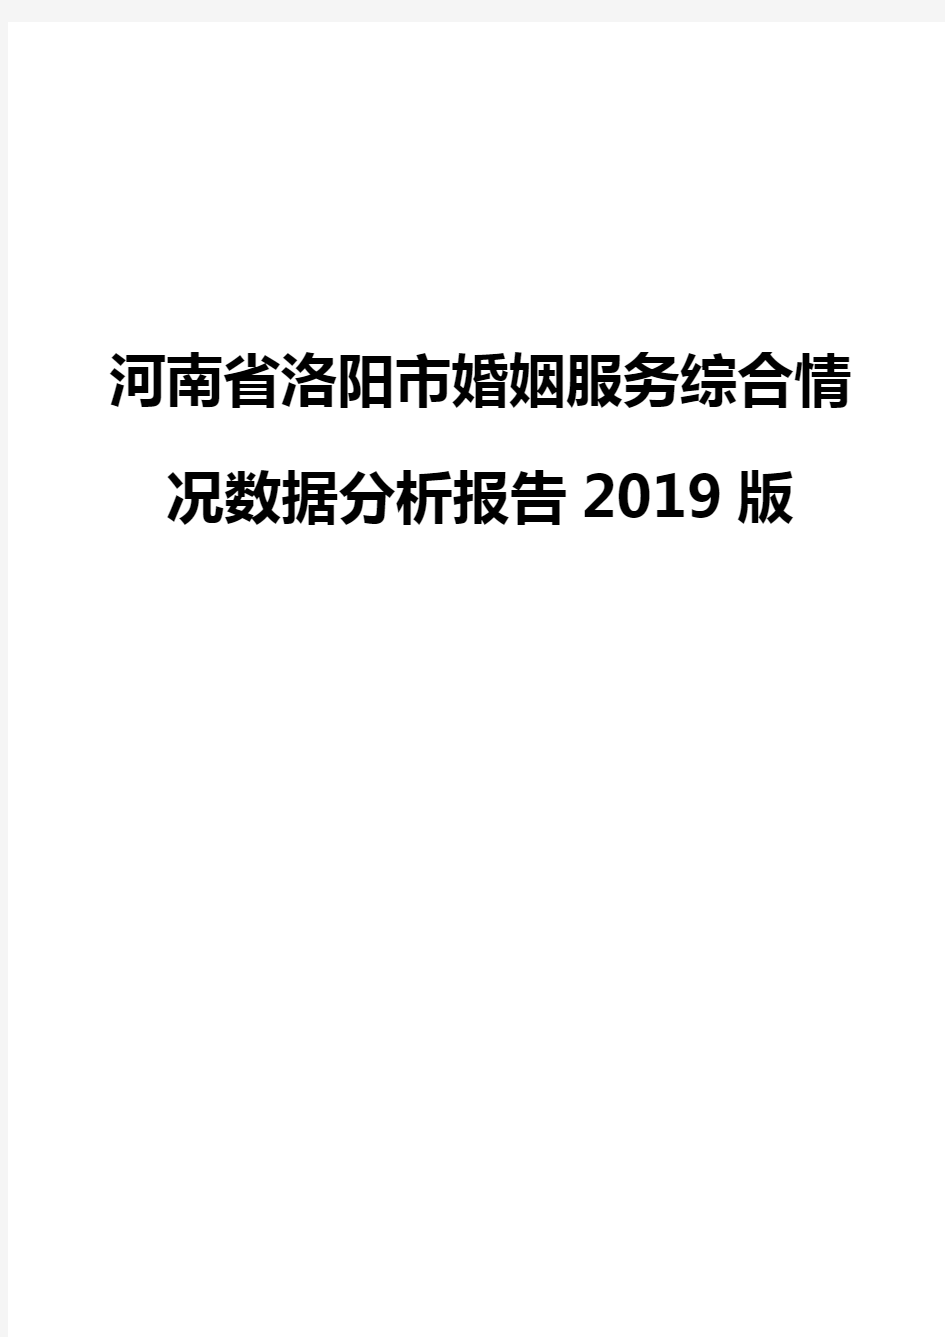 河南省洛阳市婚姻服务综合情况数据分析报告2019版